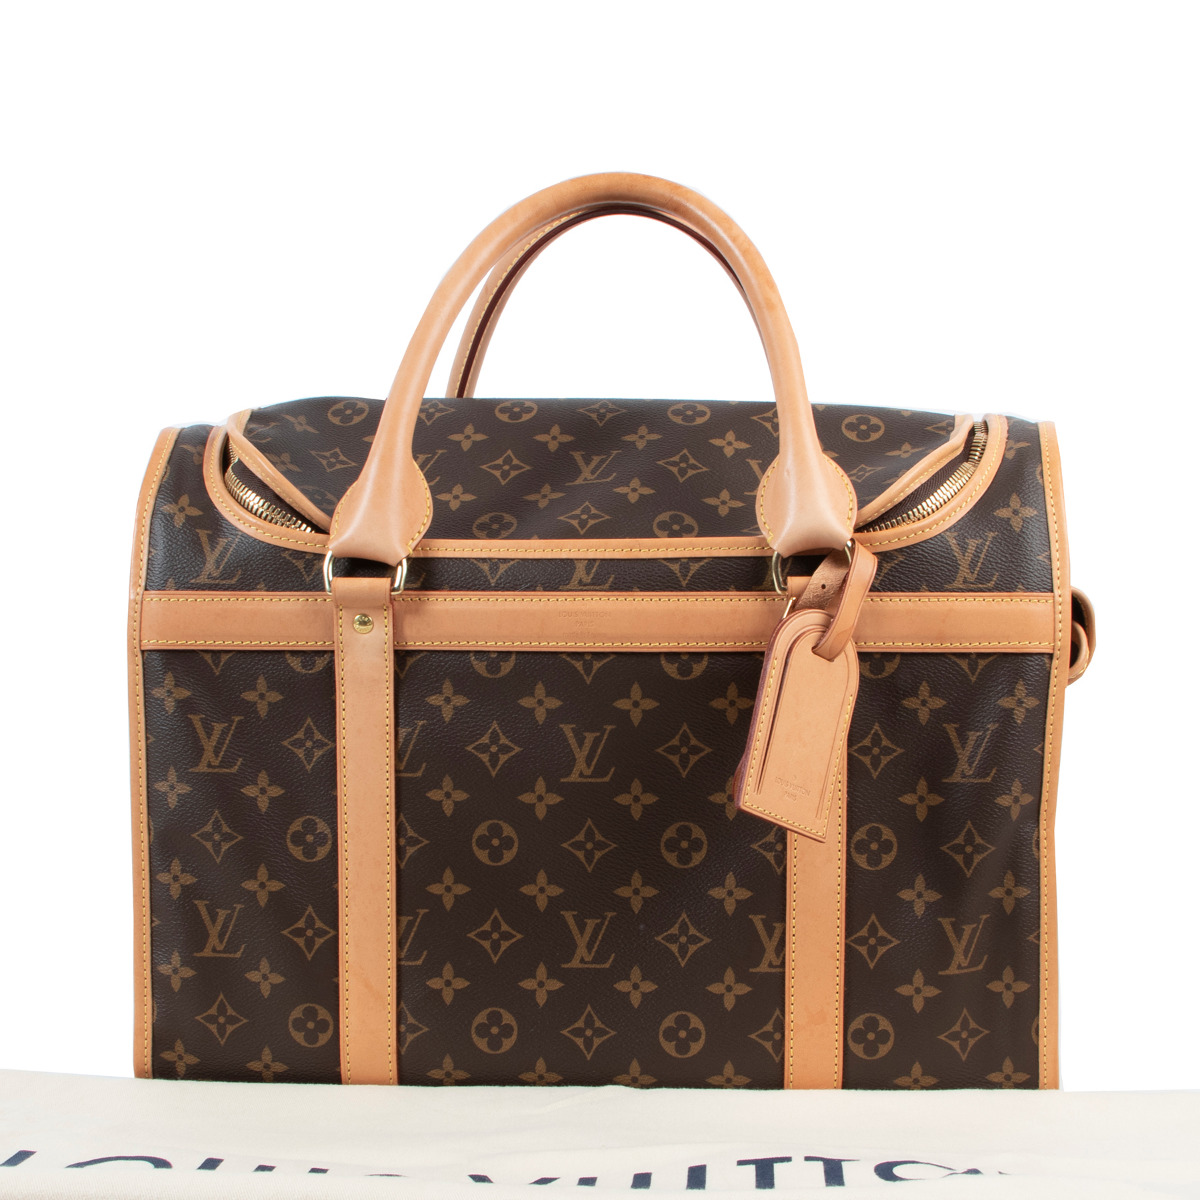 Shop Louis Vuitton Dog bag (M45662) by Corriere